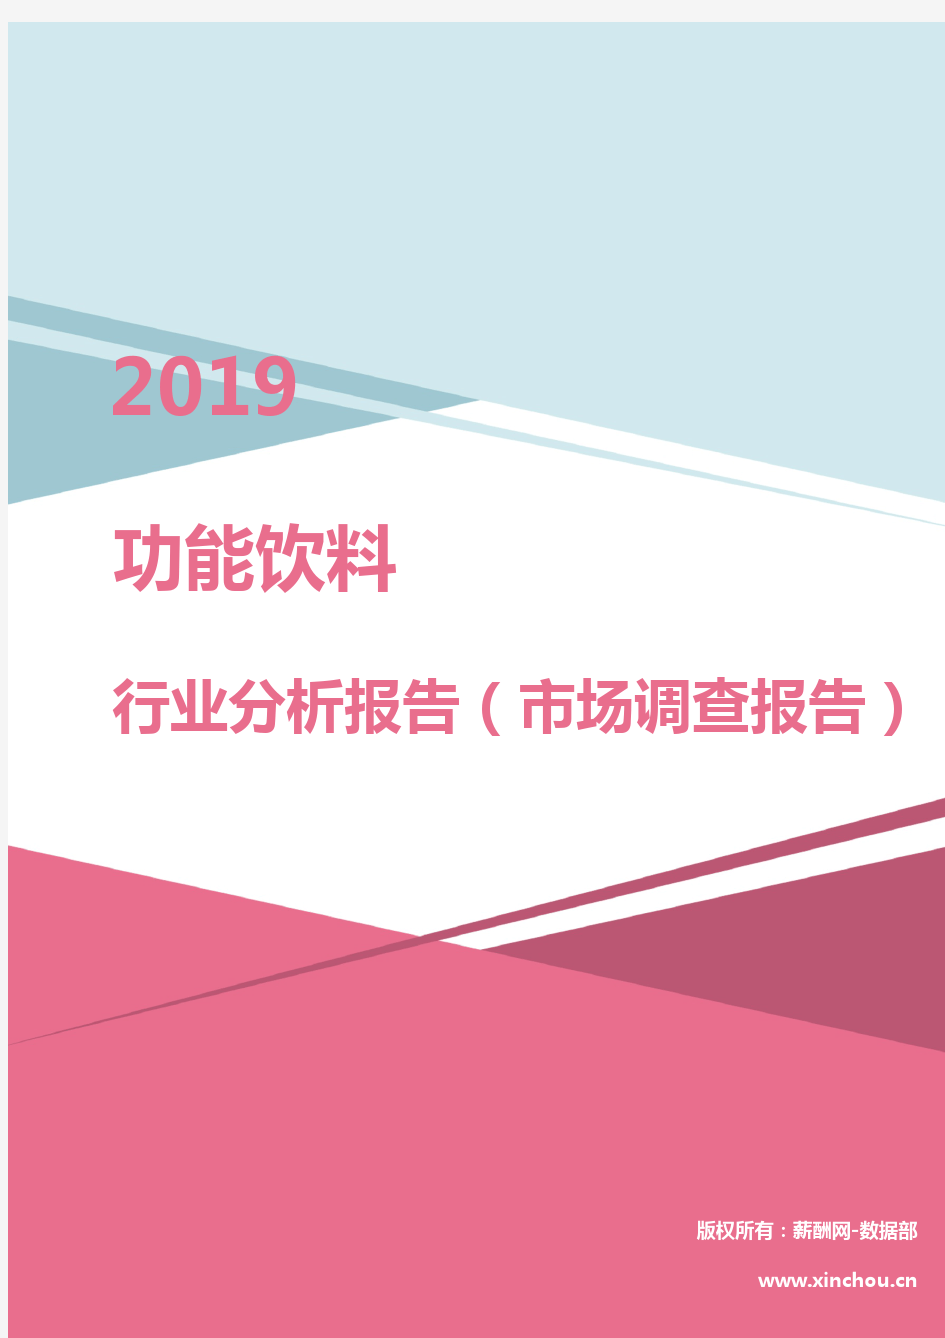 2019年功能饮料行业分析报告(市场调查报告)